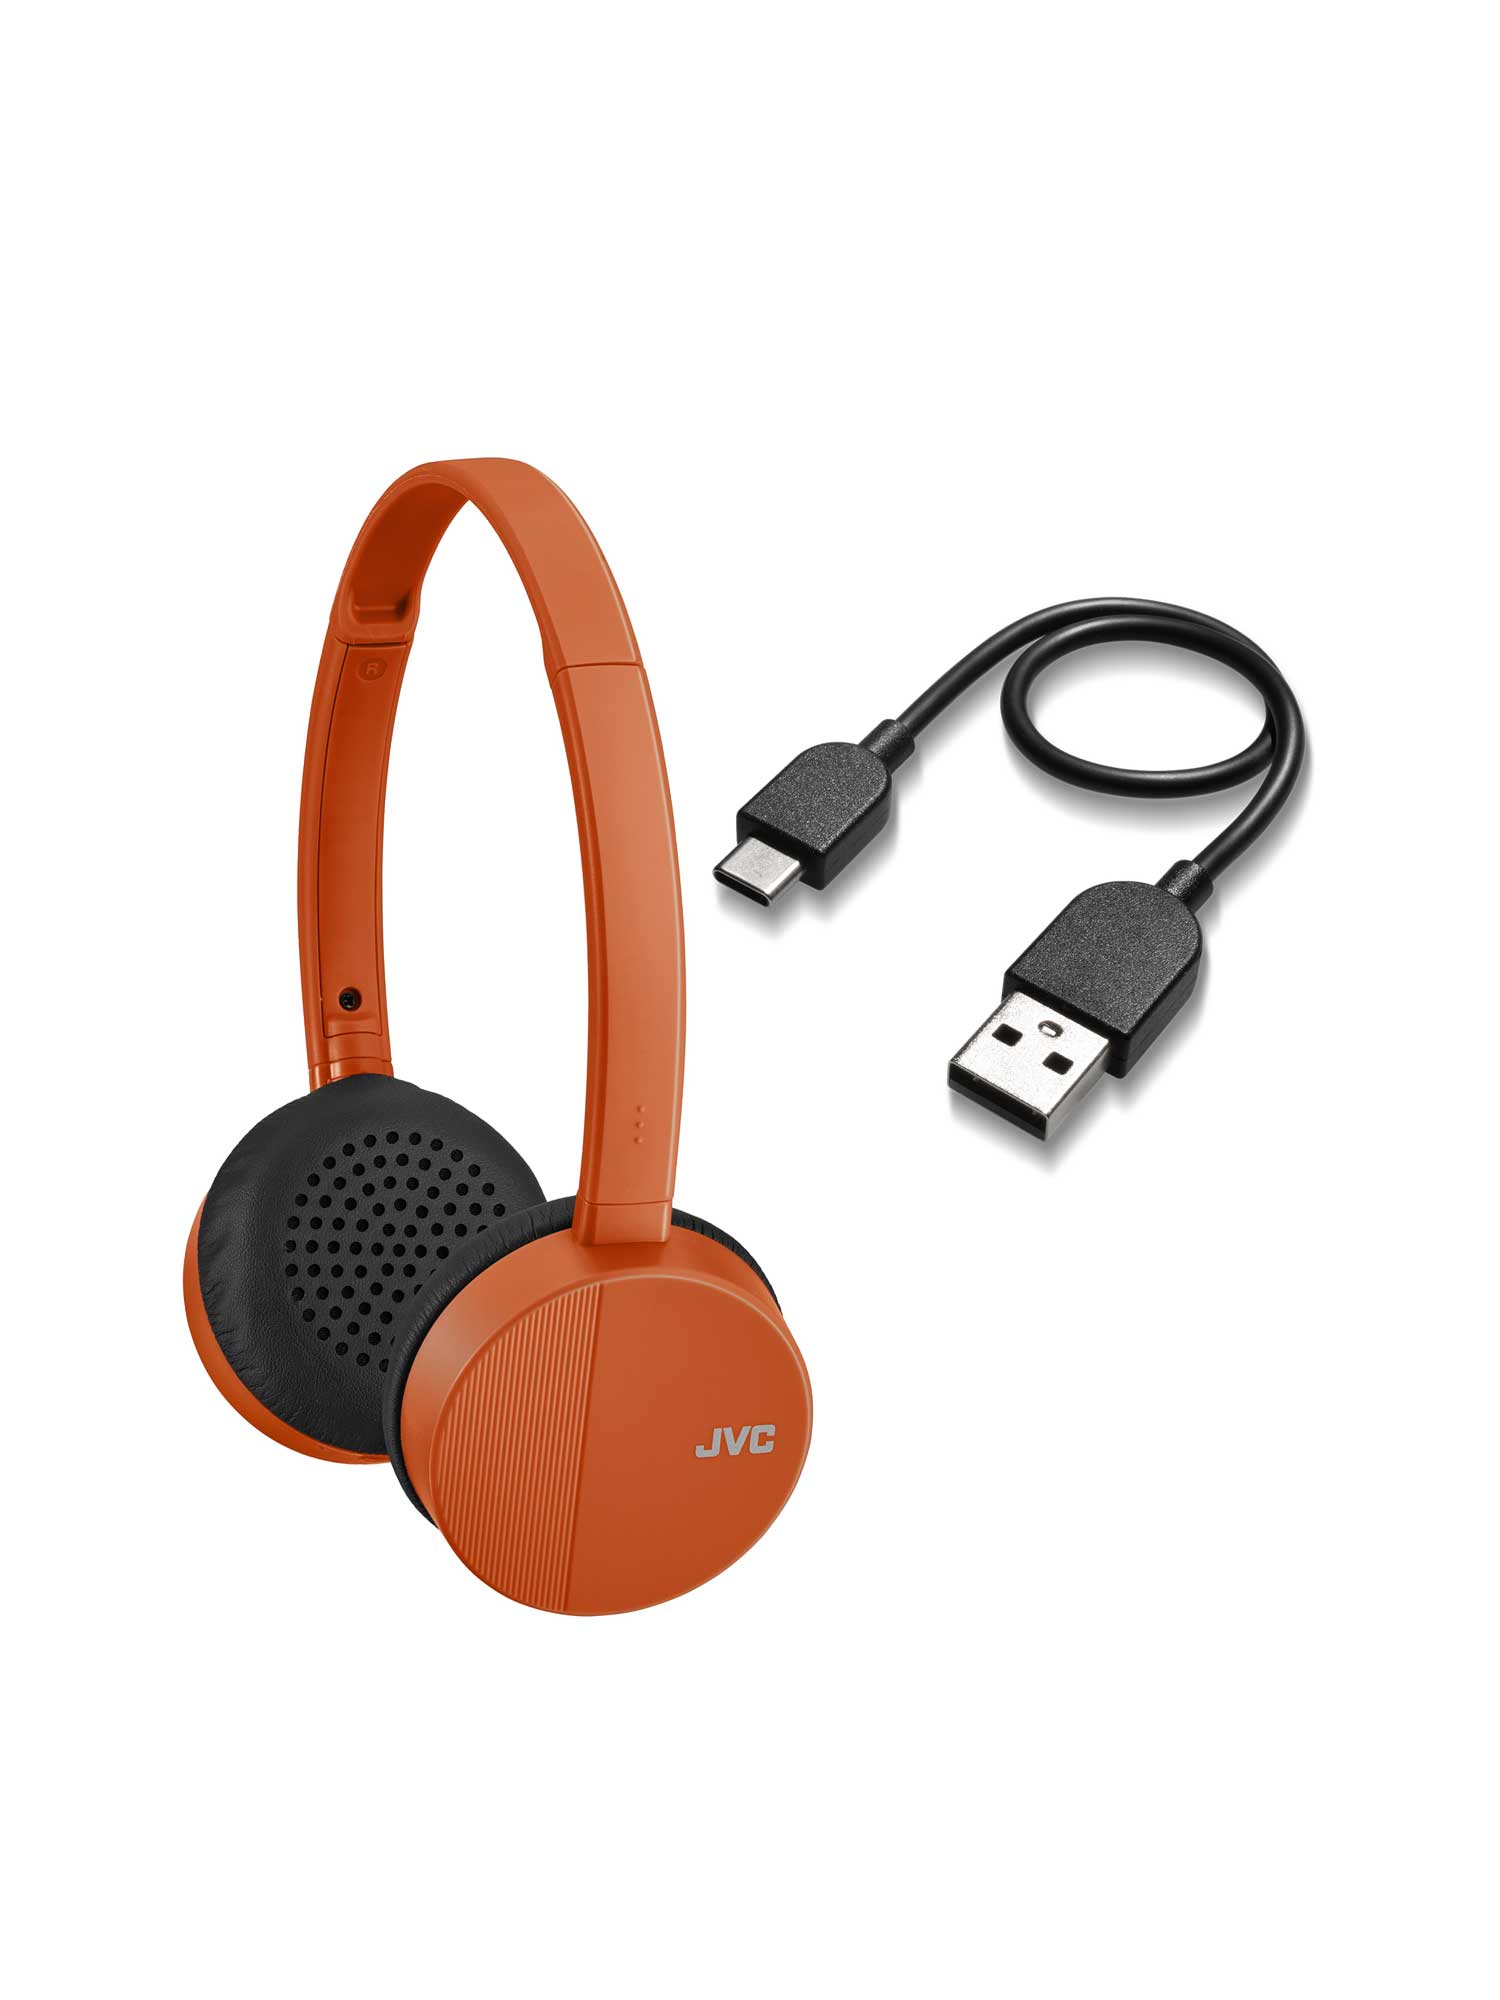 HA-S24W in orange wireless Bluetooth on-ear headphones accessories